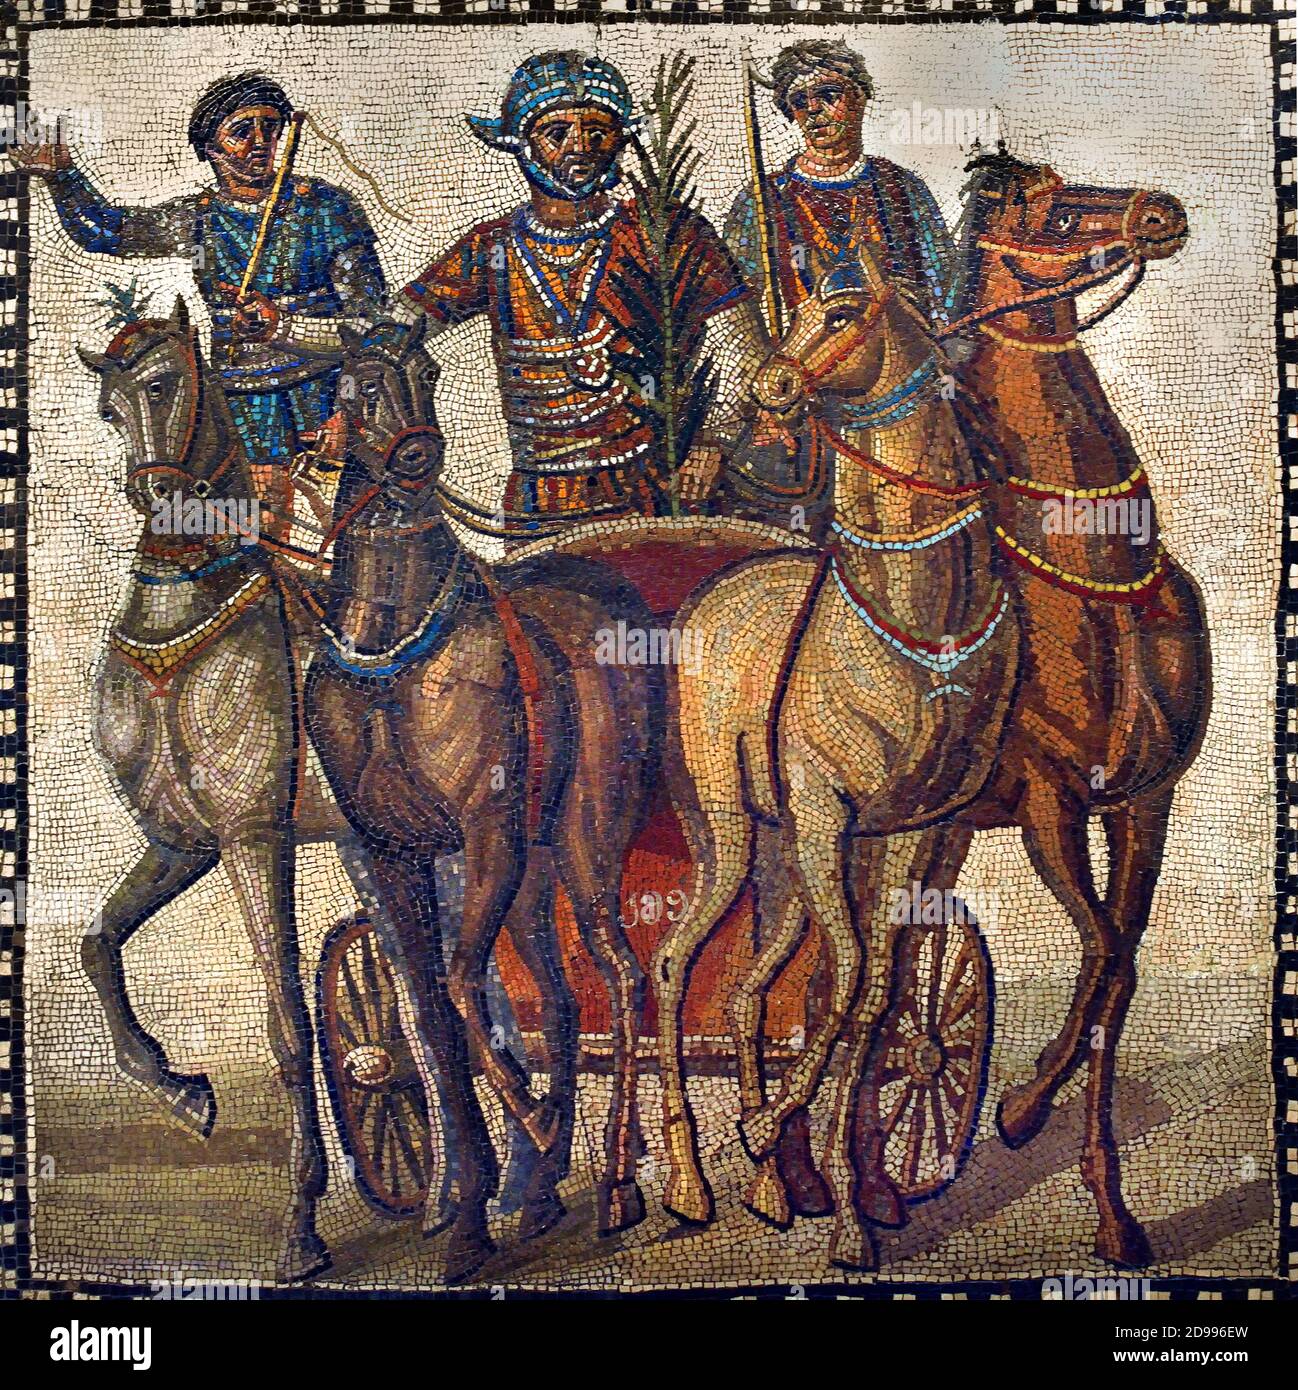 Mosaik mit einer Quadriga der Factio russata (‘die Rotweine’, die den Sommer darstellen), 3. Jahrhundert n. Chr., aus Rom, hat der Fahrer des roten Teams, Sieger des Rennens, die Palme des Sieges eingenommen. Madrid, Archäologisches Nationalmuseum, Spanisch Spanien, ( EINE Quadriga ist ein Auto oder Wagen von vier Pferden gezogen ) Stockfoto